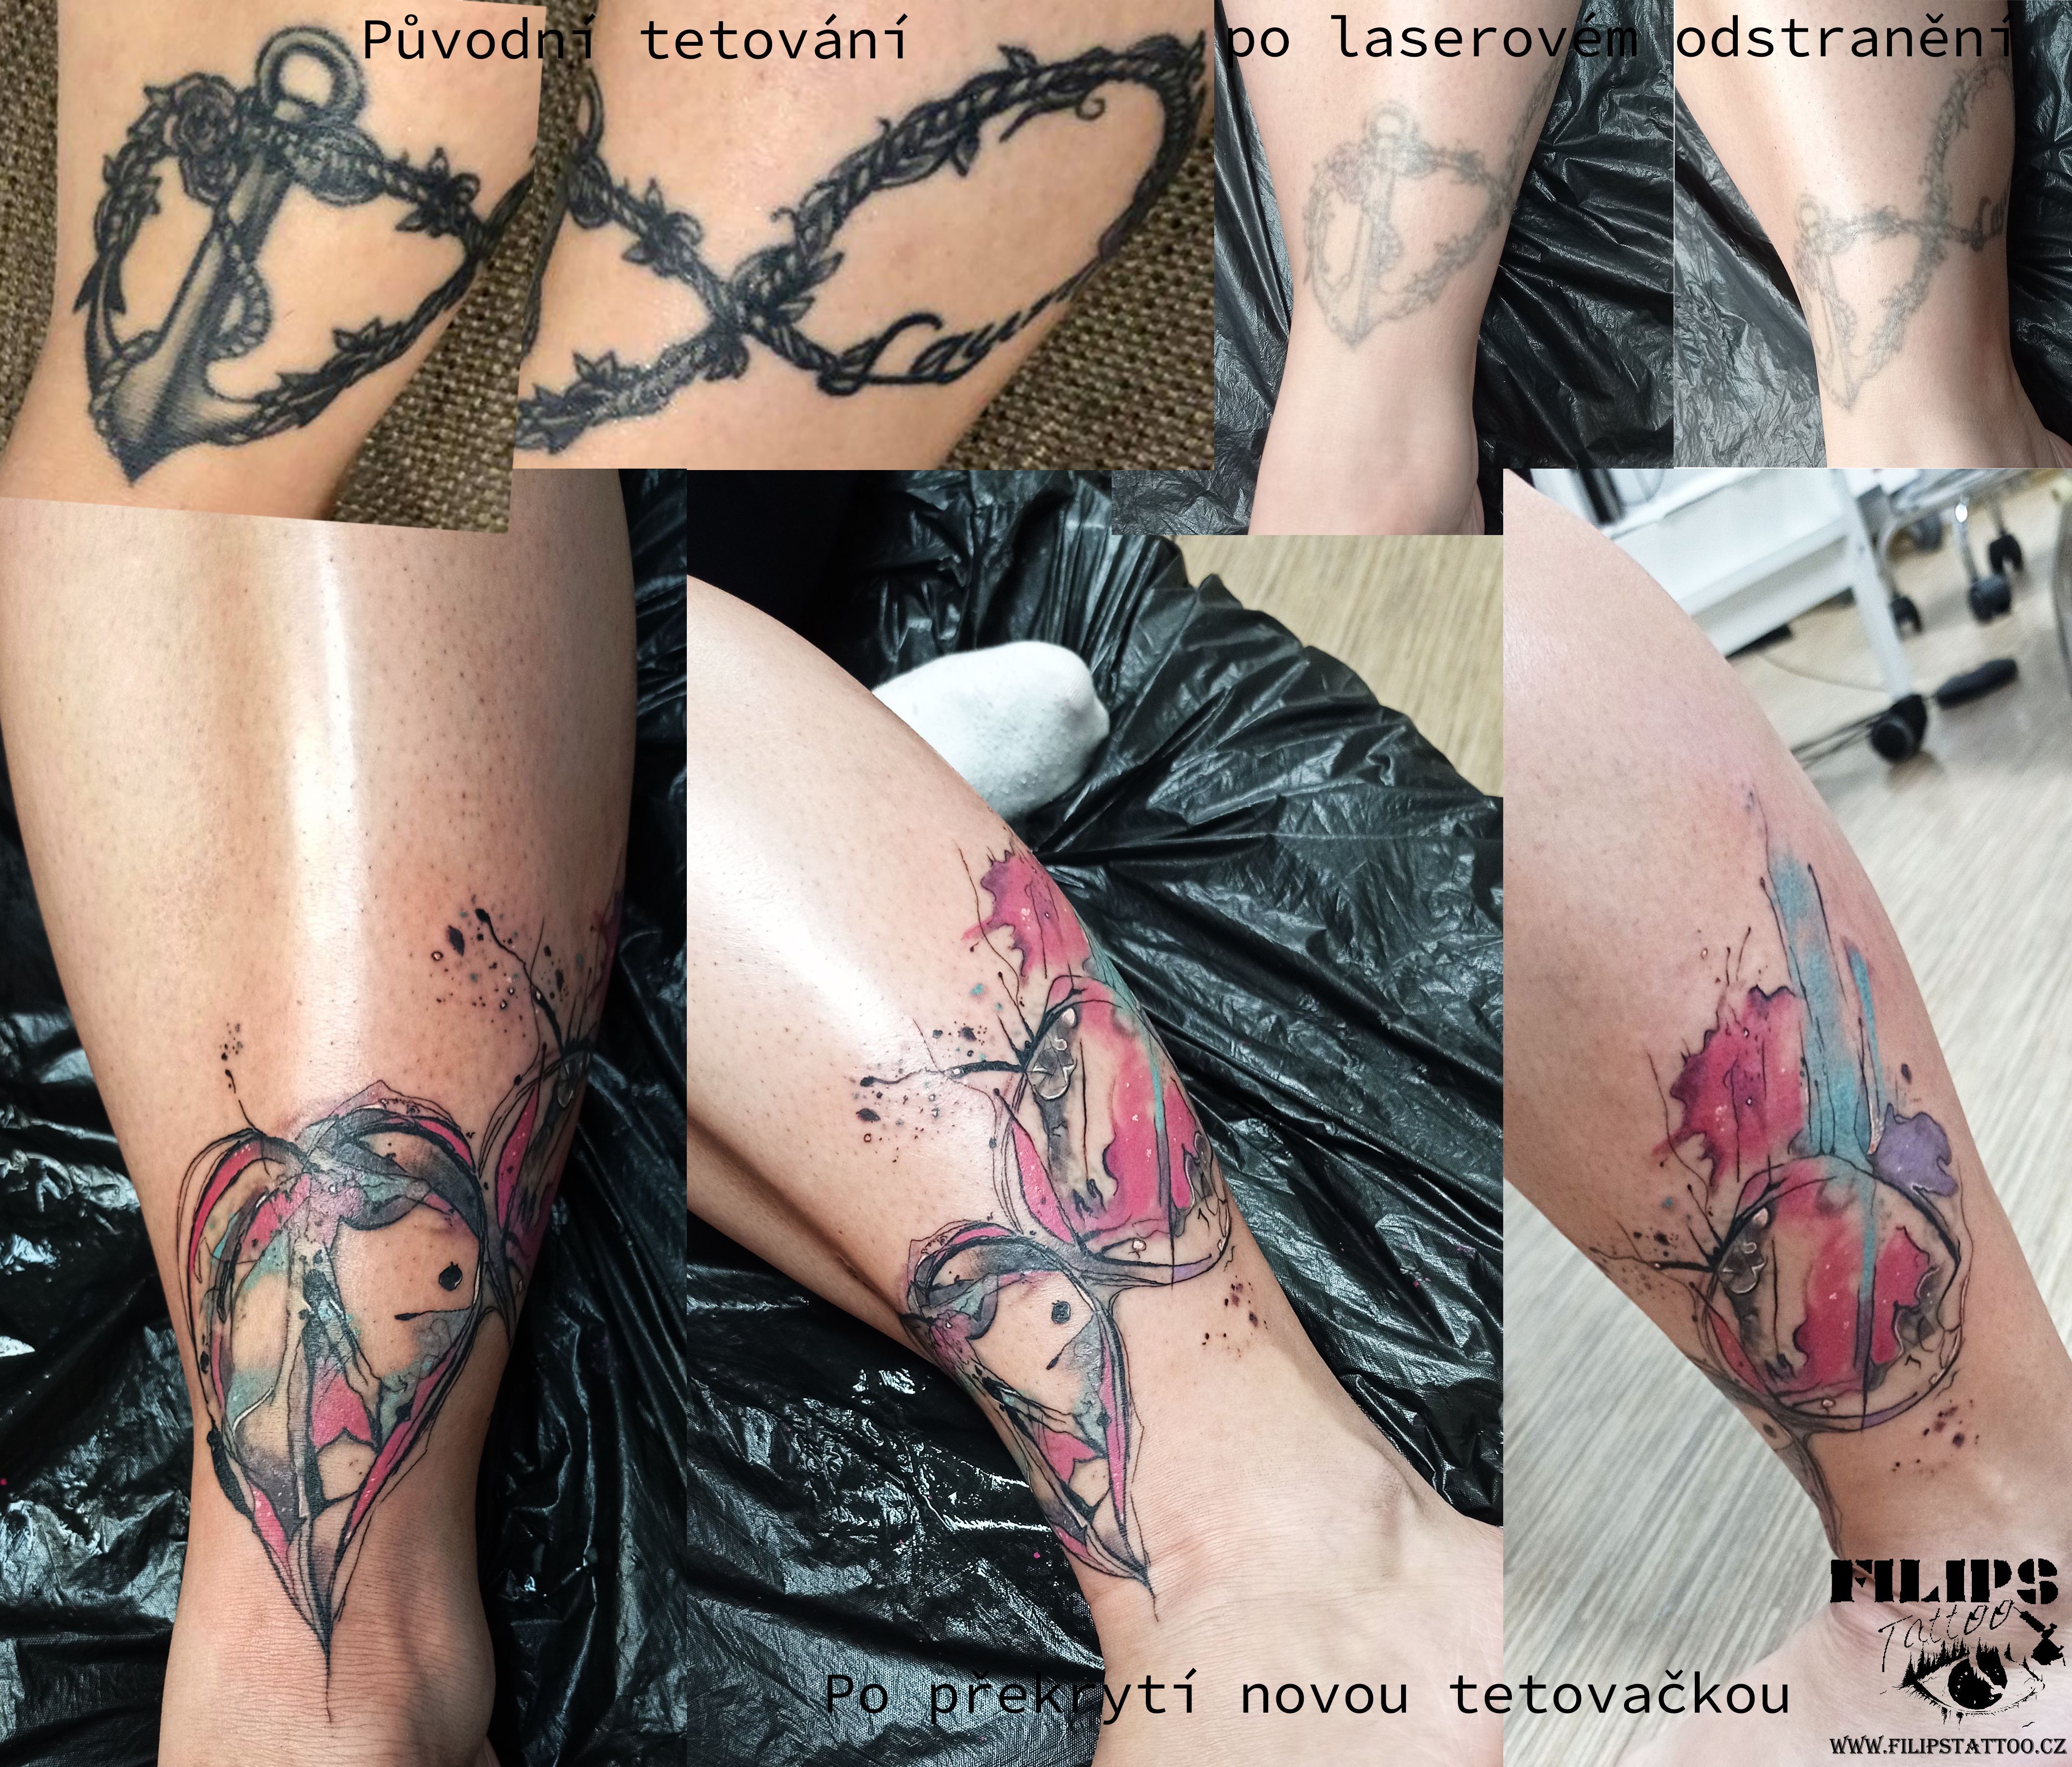 Překrytí starší tmavé tetovačky, které bylo potřeba nejprve zesvětlit laserem, a poté překrýt novou tetovačkou 🙂